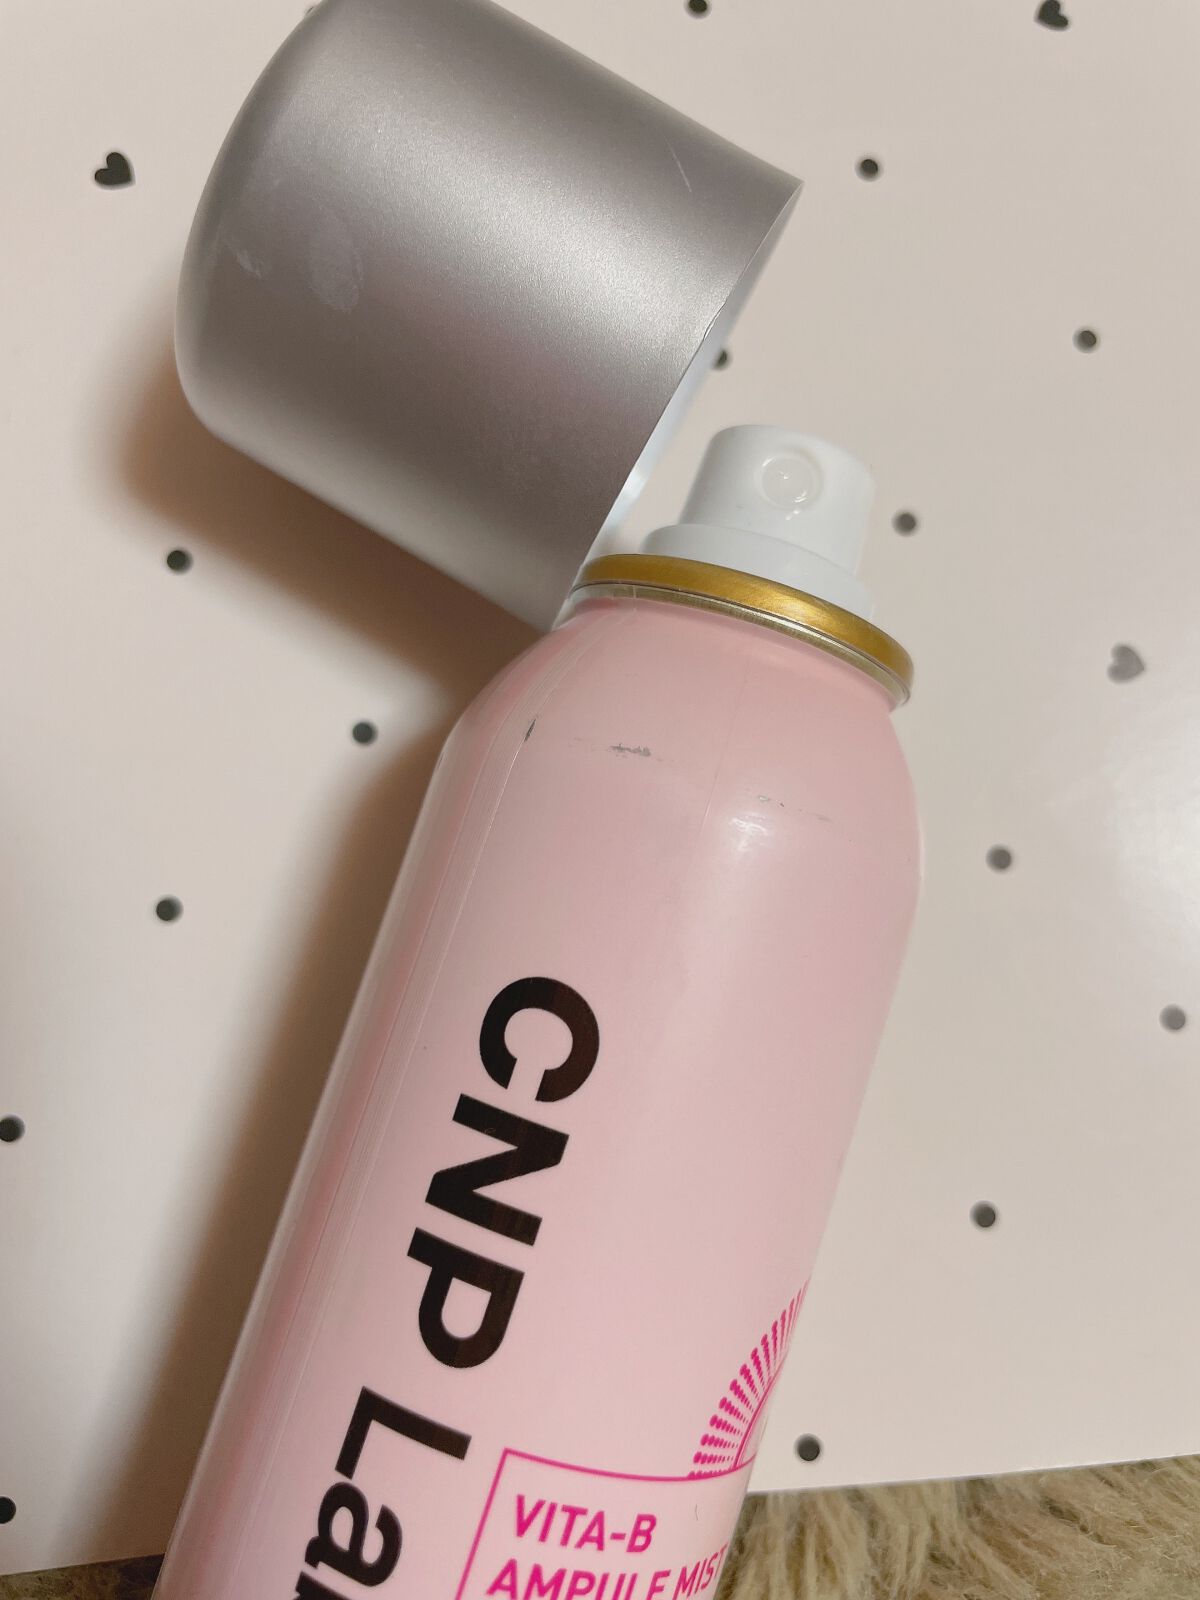 ビタBアンプルミスト/CNP Laboratory/ミスト状化粧水を使ったクチコミ（2枚目）